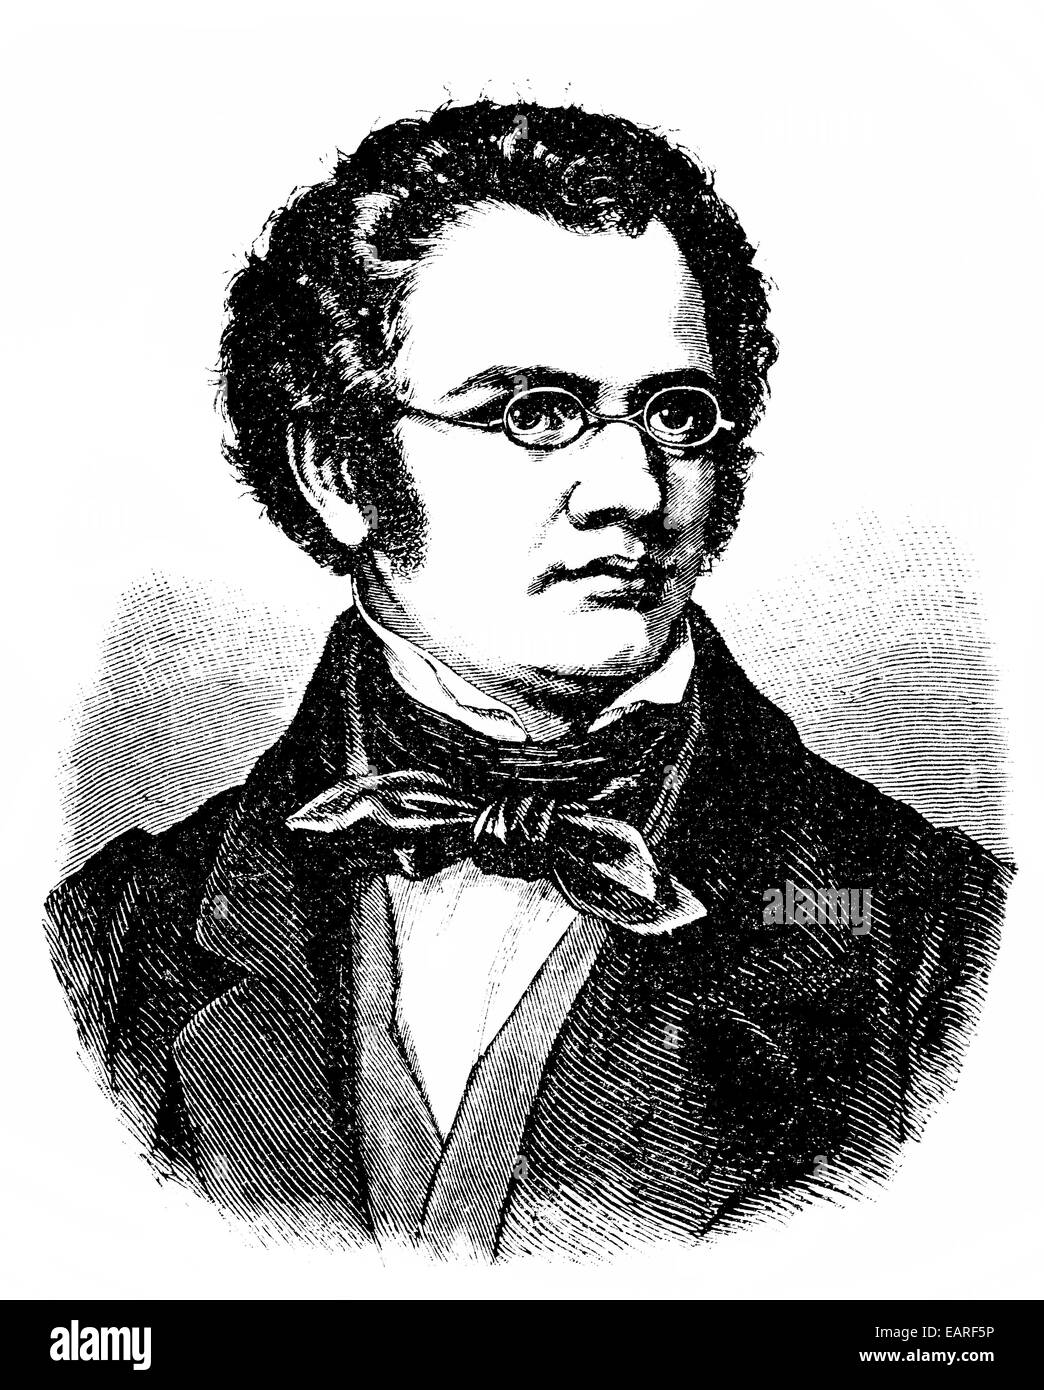 Franz Peter Schubert, 1797 - 1828, an Austrian composer, Portrait von Franz Peter Schubert, 1797 - 1828, ein österreichischer Ko Stock Photo